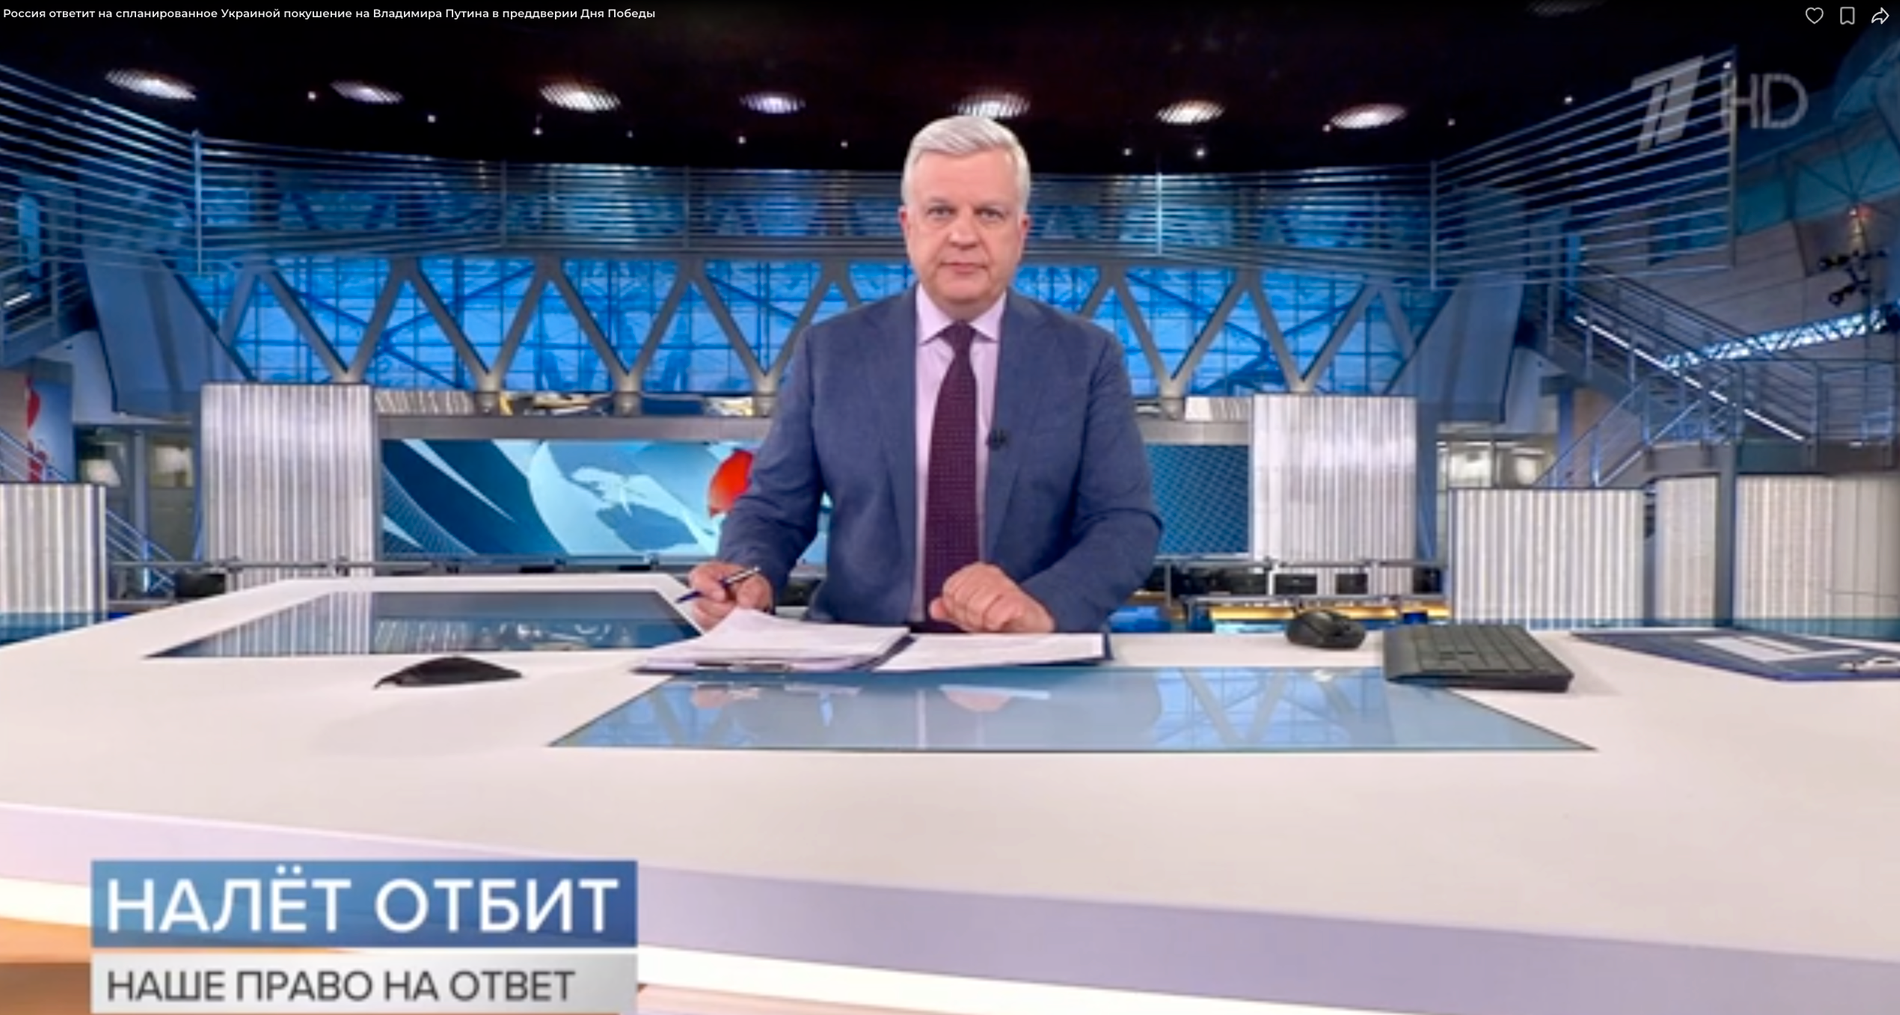 "Anfallet undanröjt - vi har rätt att svara" stod det i textrutan under nyhetsuppläsaren i Pervij kanal på onsdagskvällen.